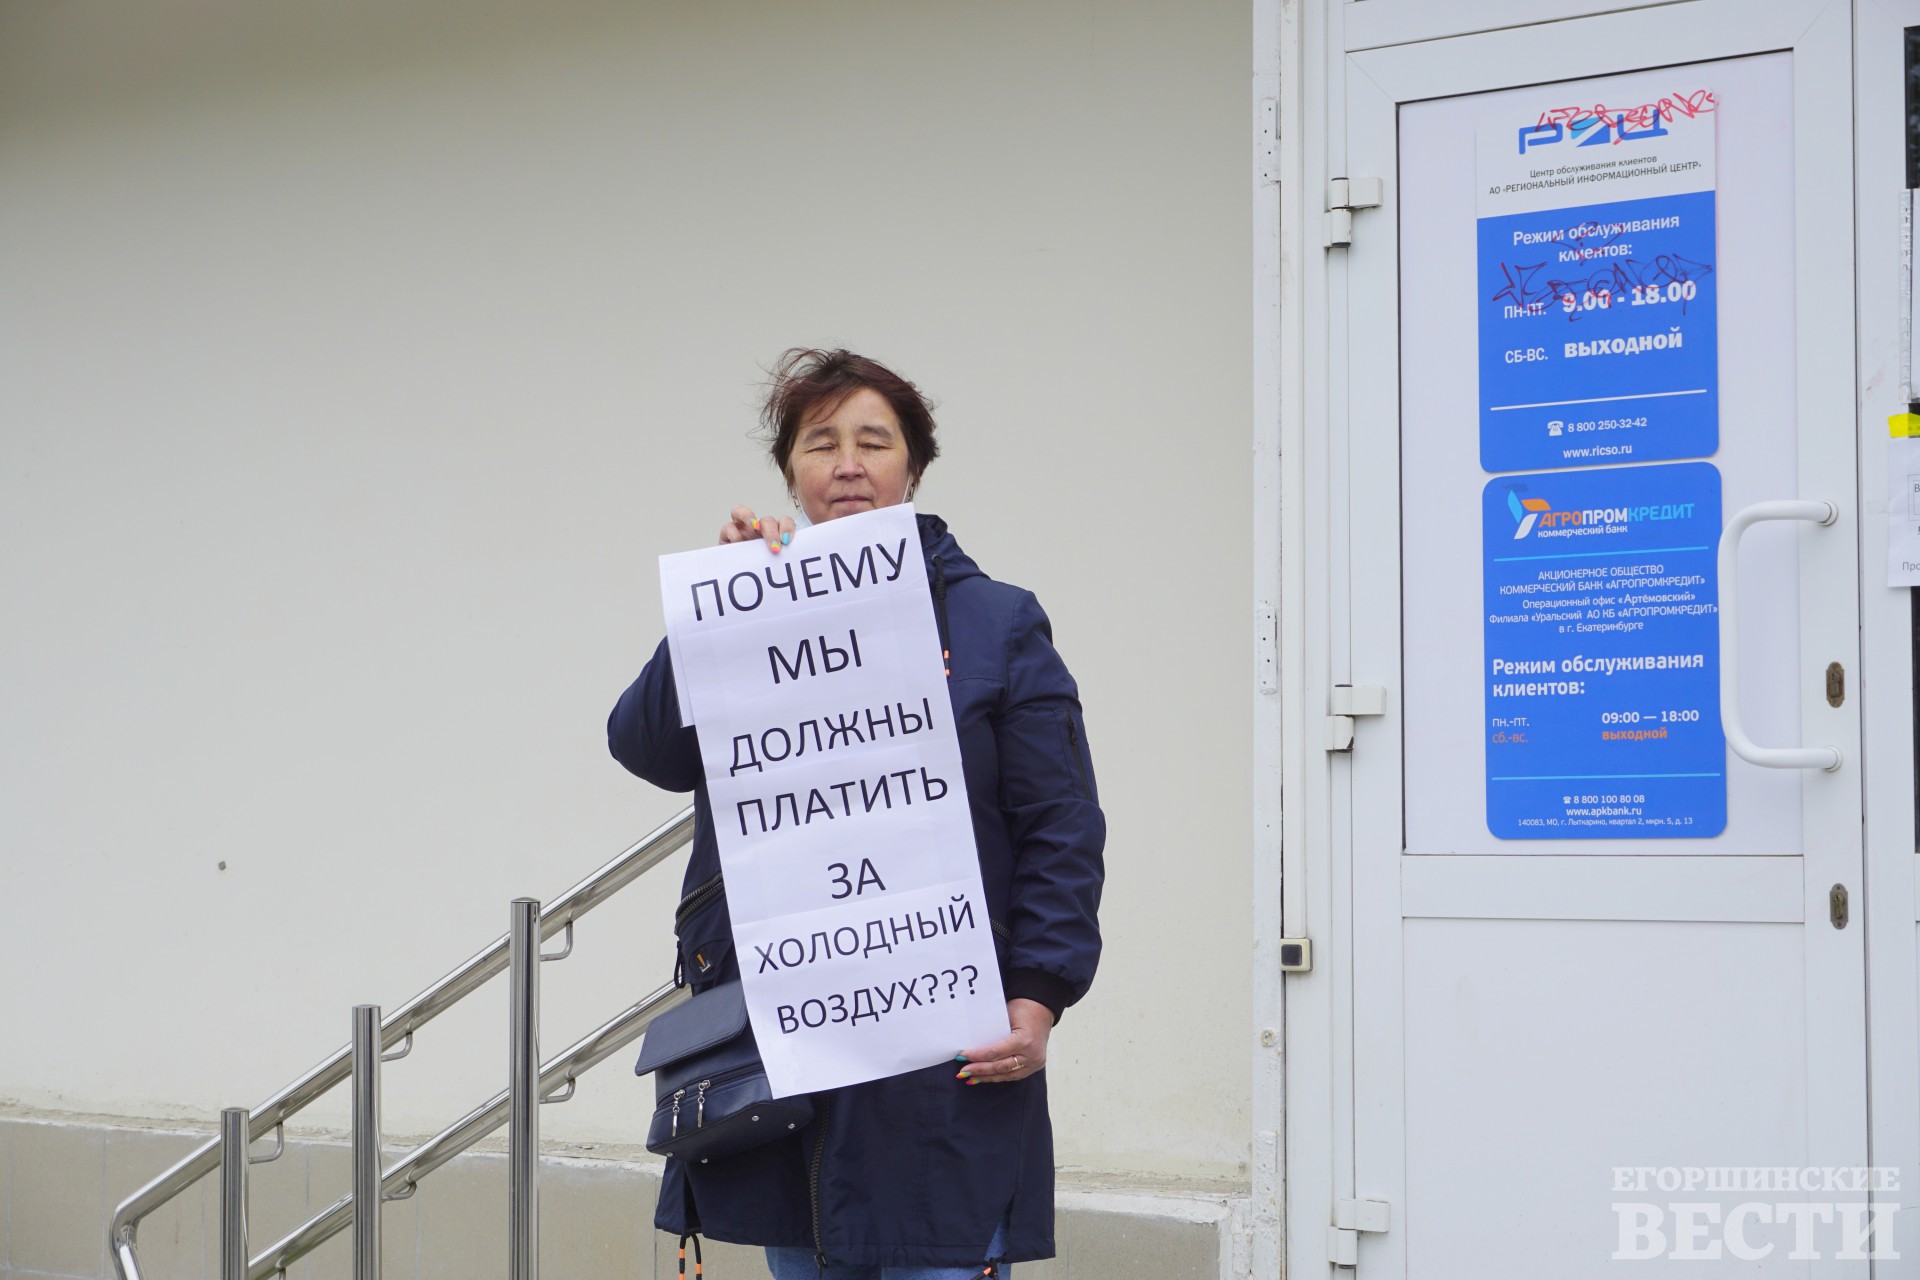 Ирина Подшивалов встала в пикет у входа в РИЦ. Фото: Андрей Барабанов, 